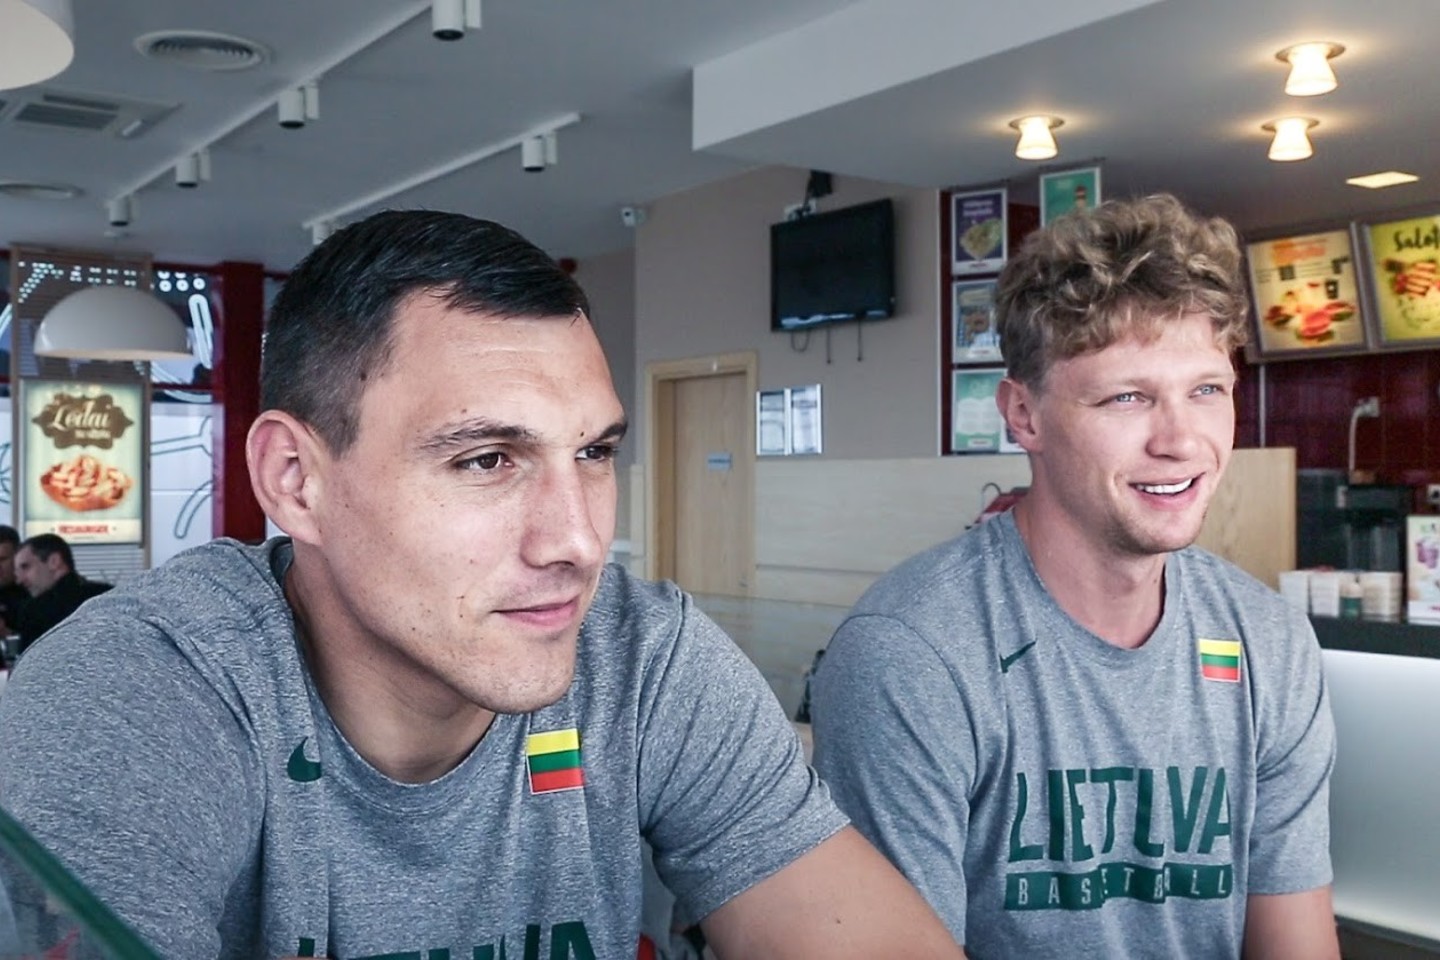  Lietuvos krepšininkai papasakojo apie savo pusryčius.